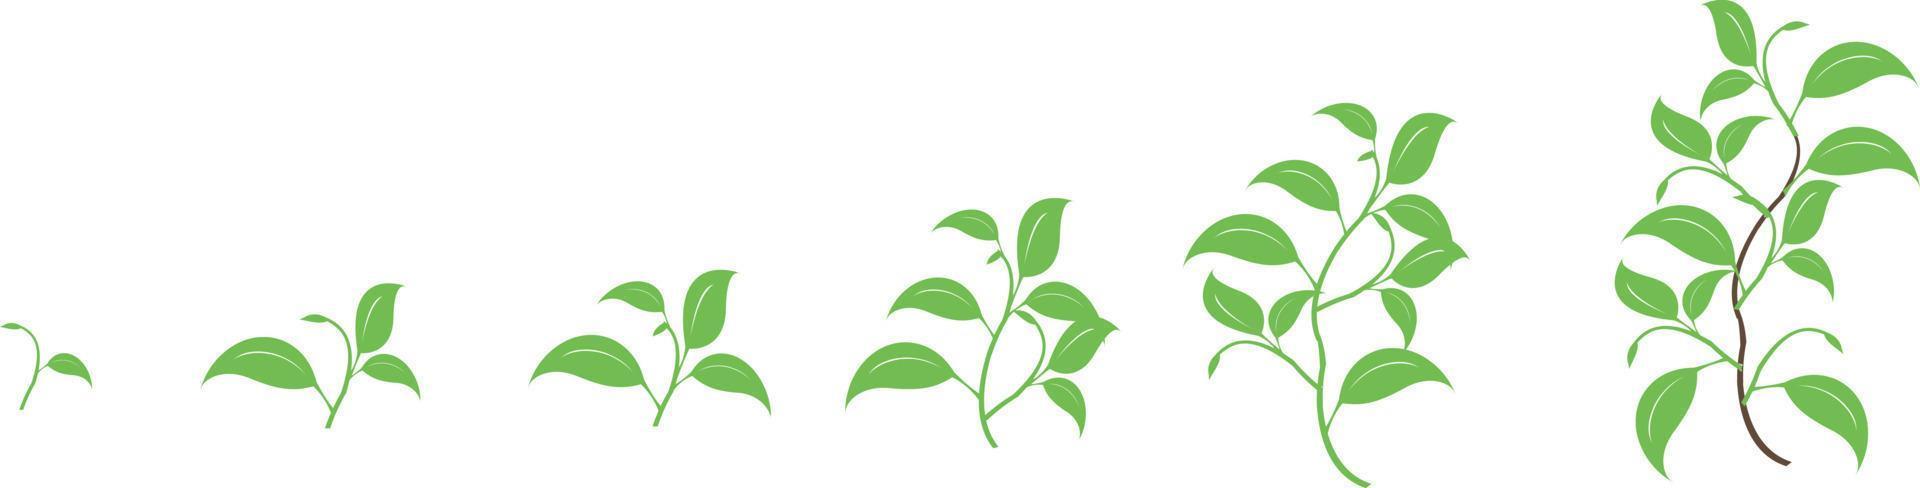 elementi di design vettoriale set di raccolta ramo verde con foglie. illustrazione elegante di bellezza decorativa per foglia di design in stile acquerello.